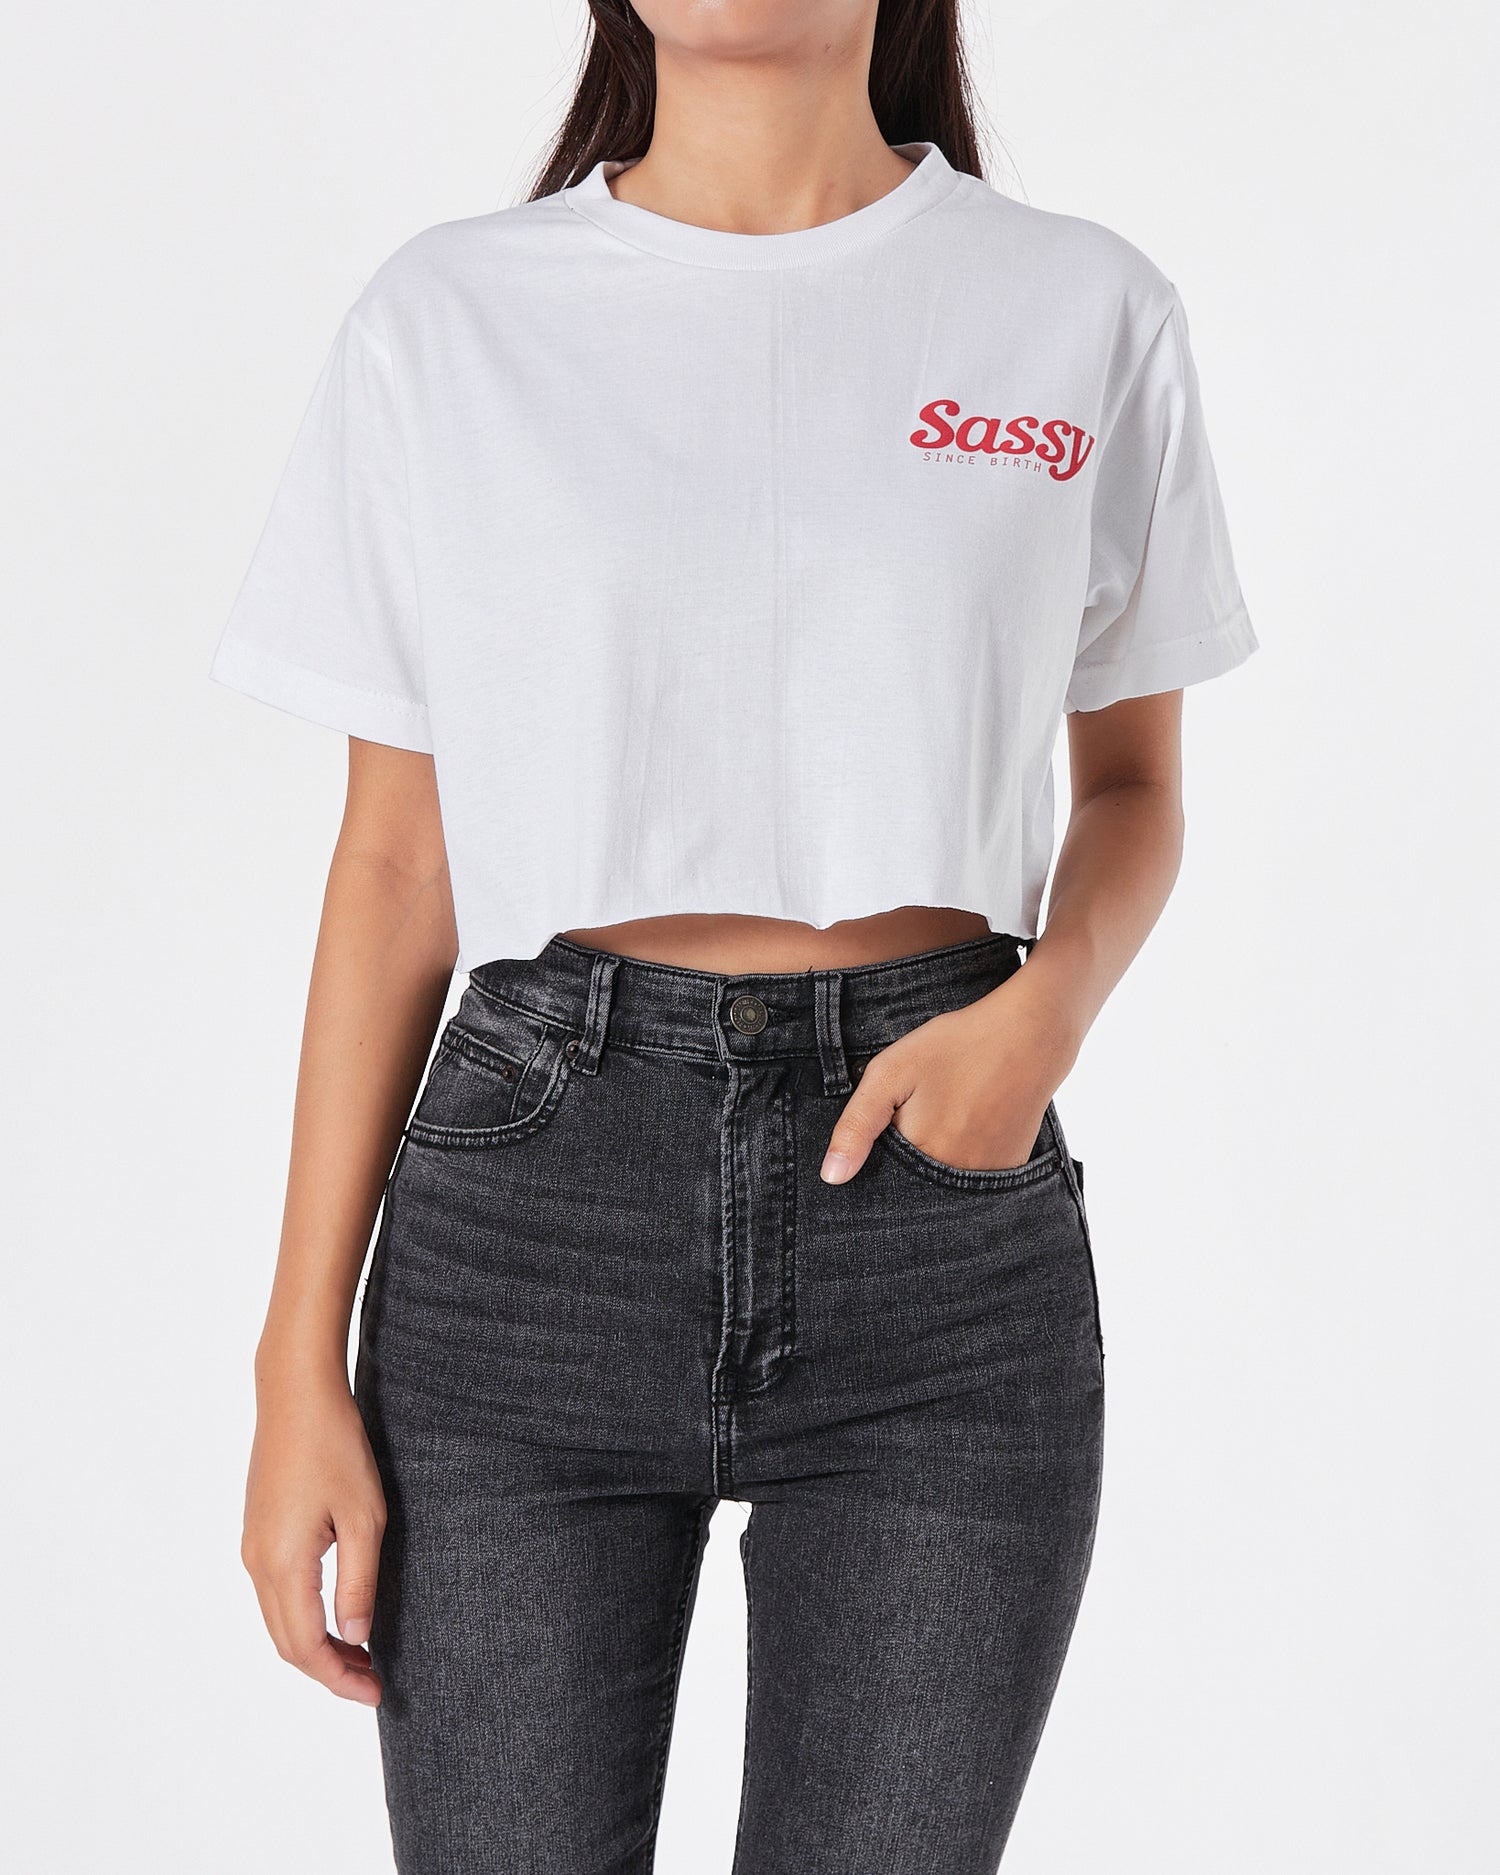 Sassy Lady WhiteT-Shirt Crop Top 9.90